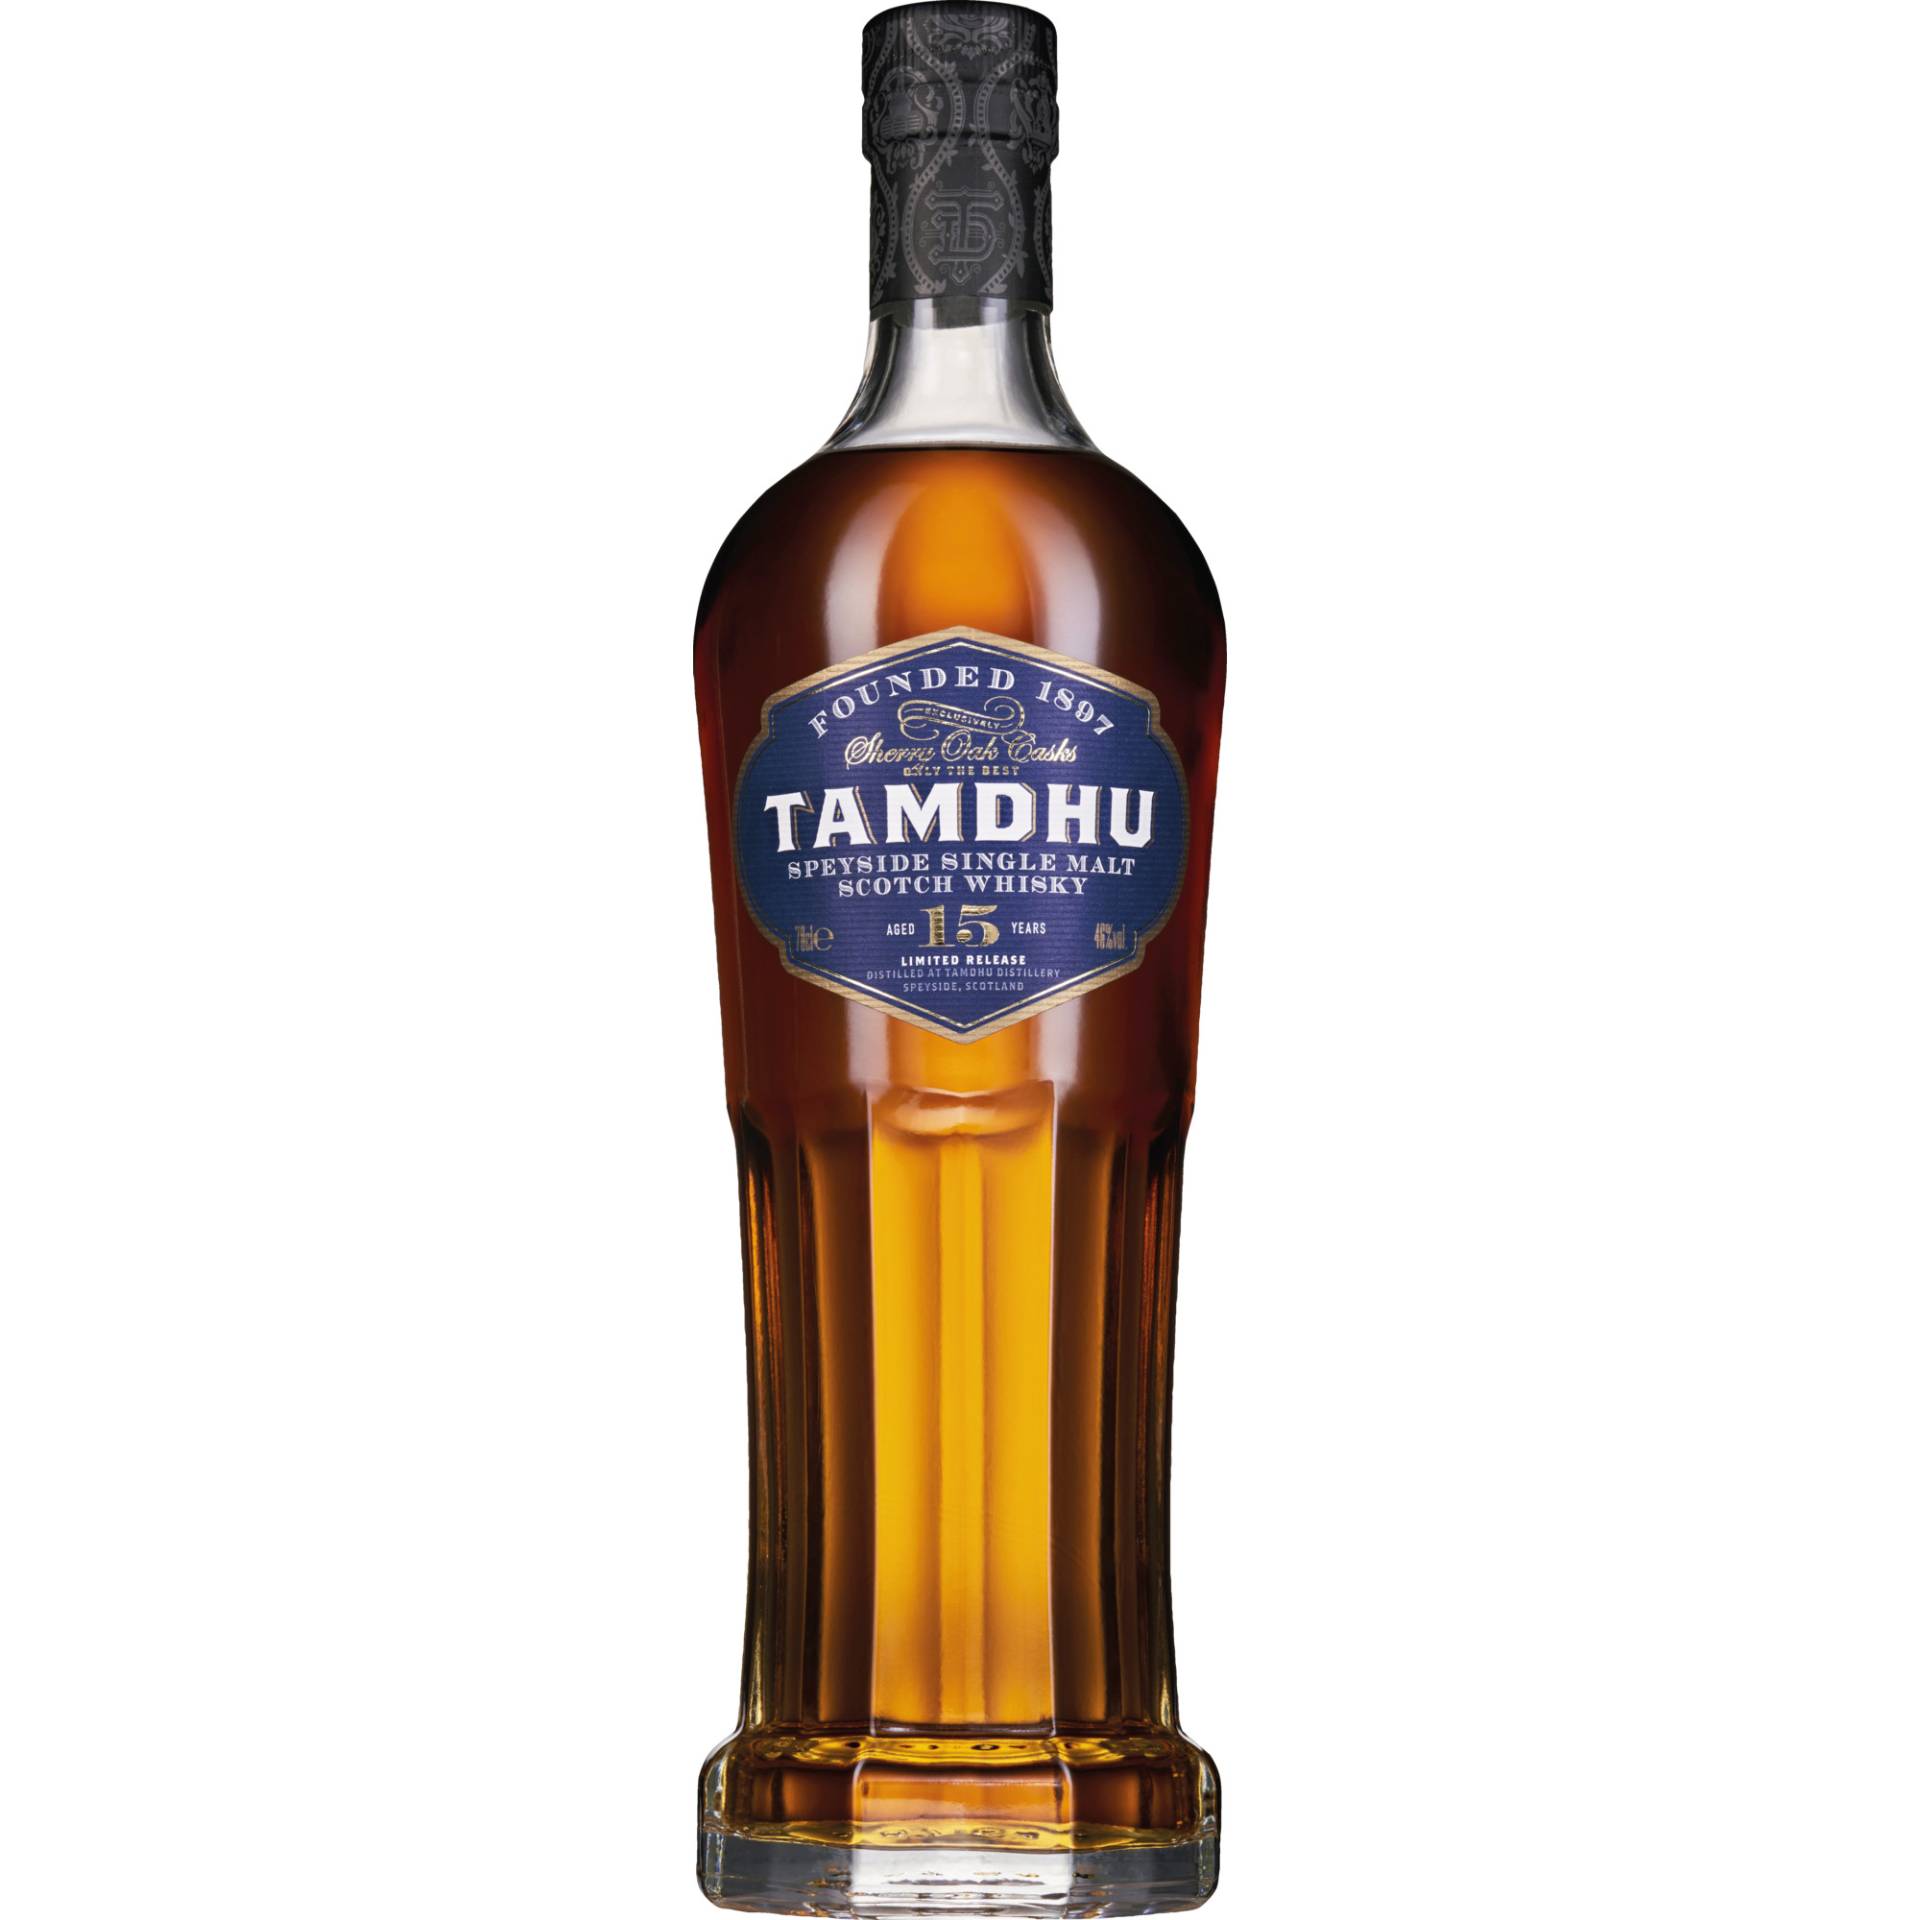 Tamdhu 15 YO Speyside Single Malt Scotch Whisky, 0,7l, 46 % Vol., Schottland, Spirituosen von Ian Macleod Distilleries Ltd., Great Britain